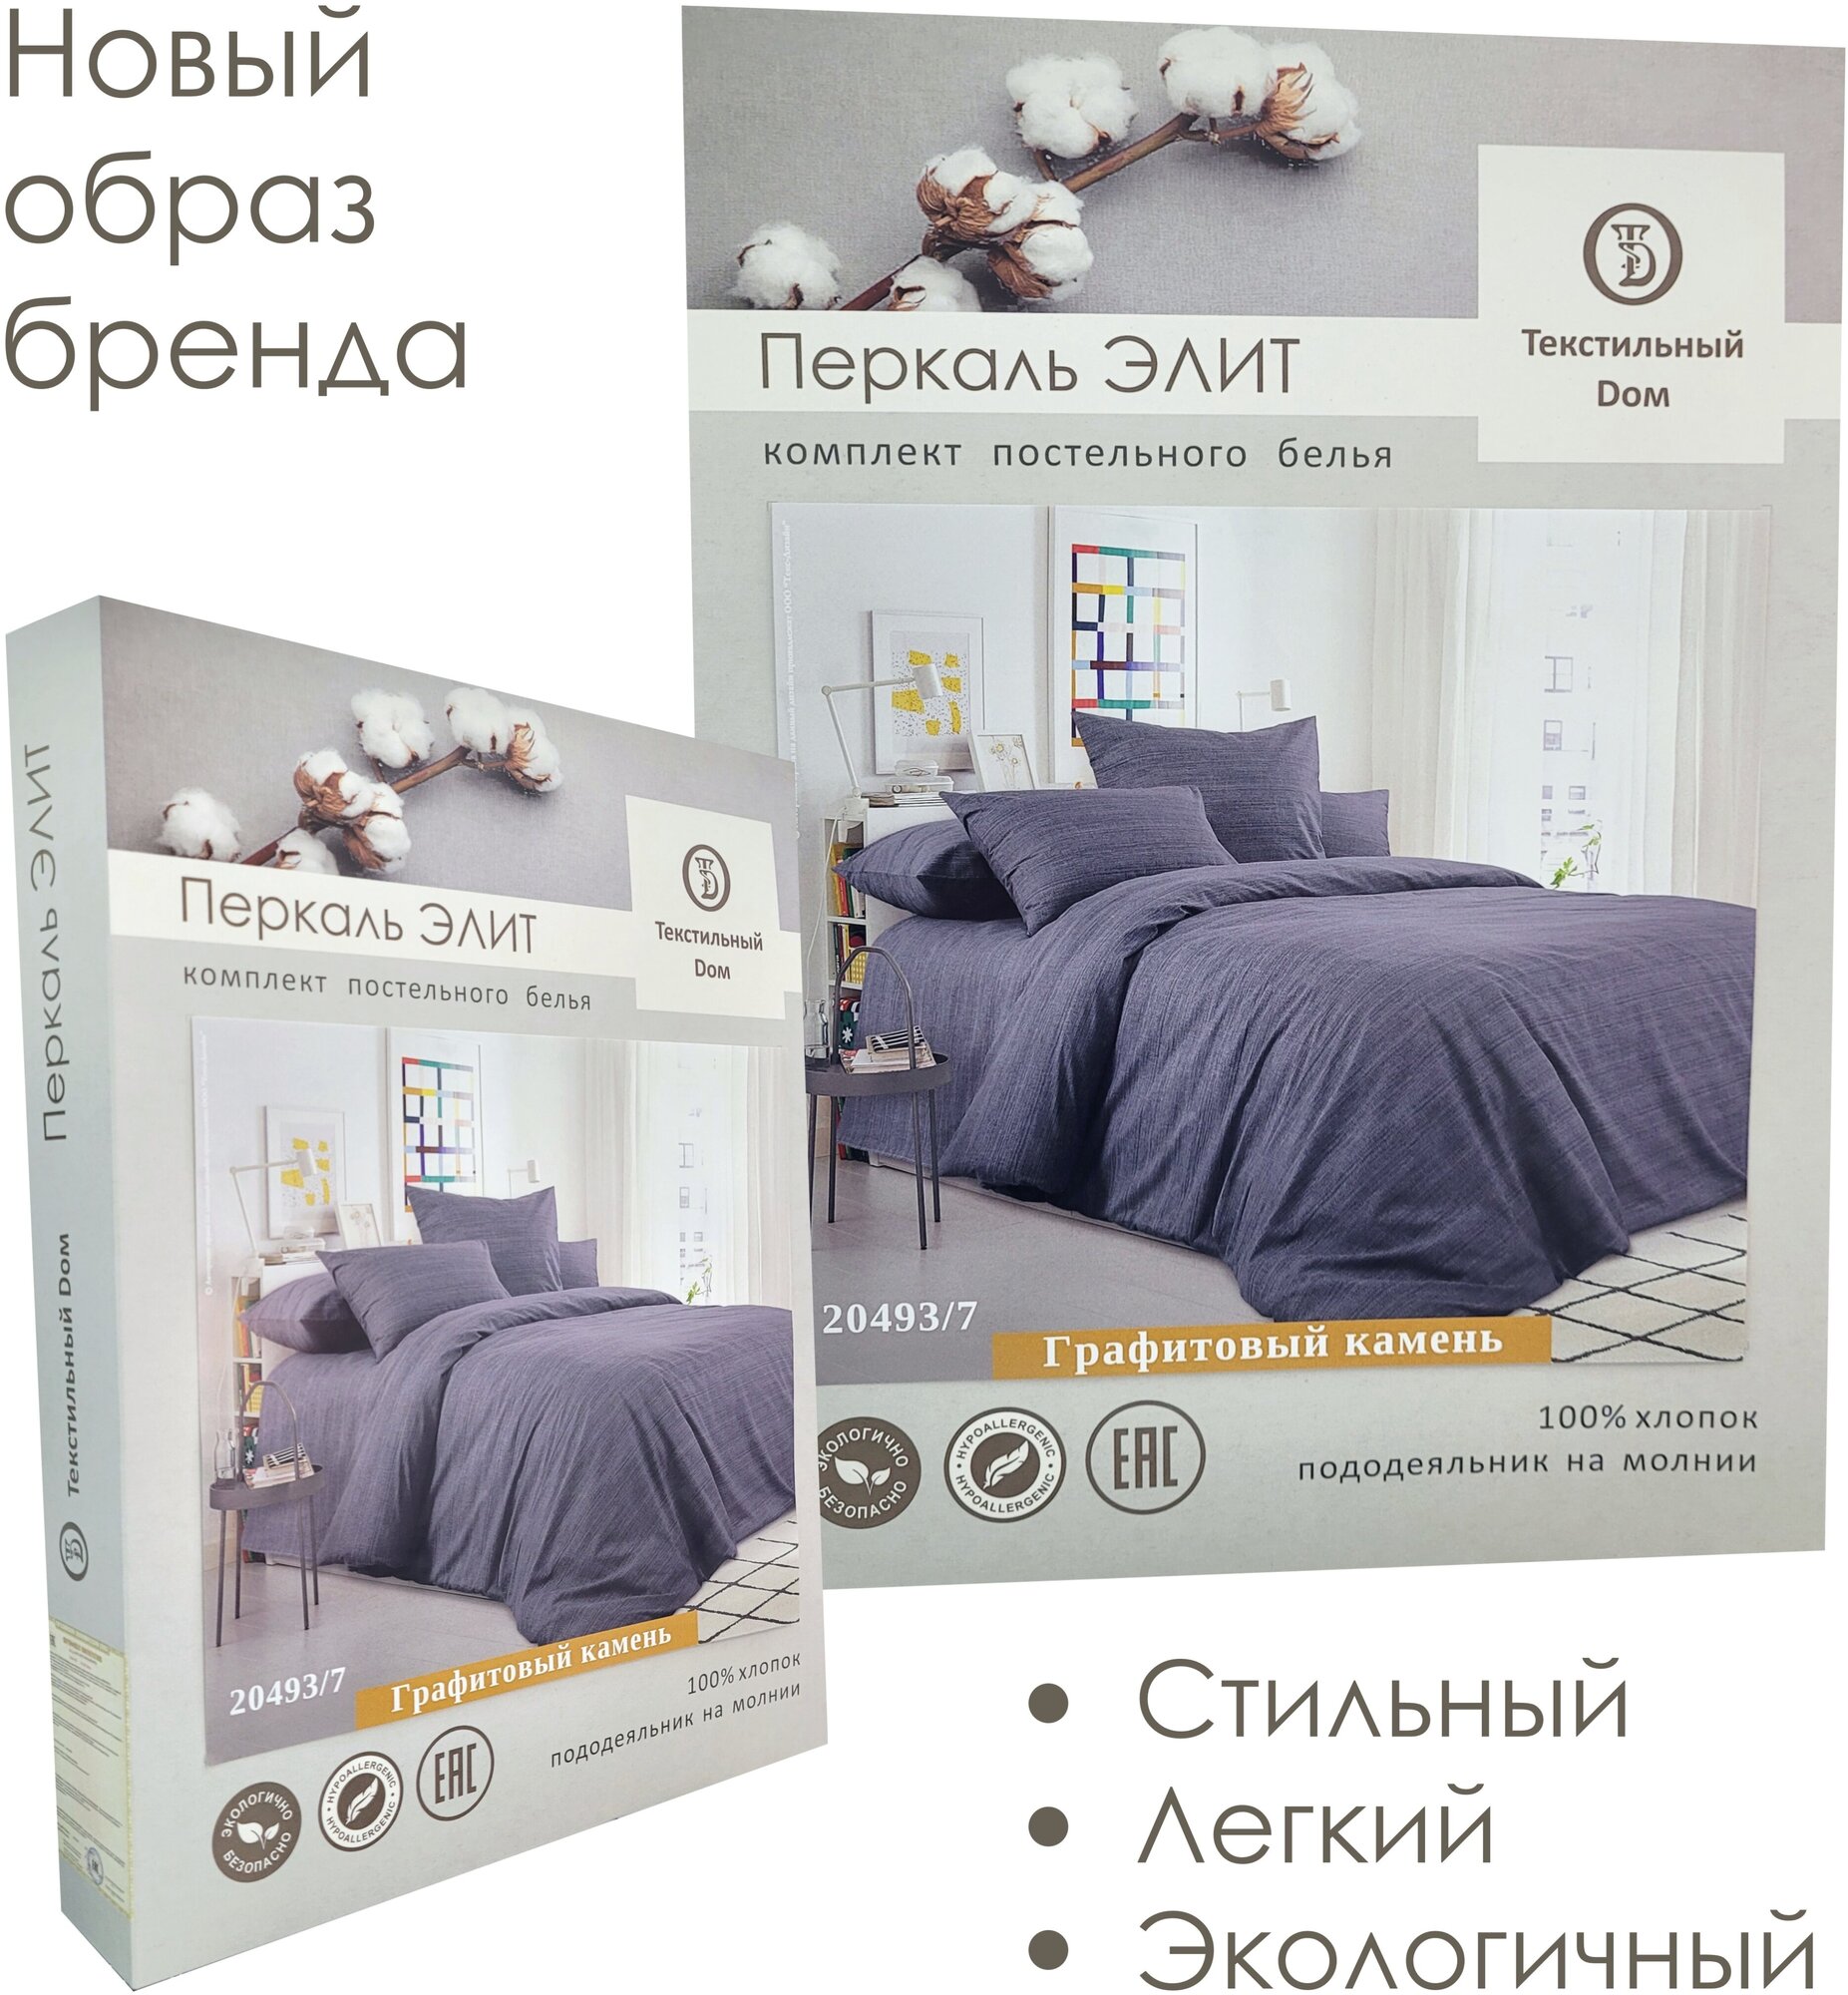 Комплект постельного белья Текстильный Dом, "Меркури капучино" 2-спальный с евро простыней (Перкаль, наволочки 50х70) - фотография № 11